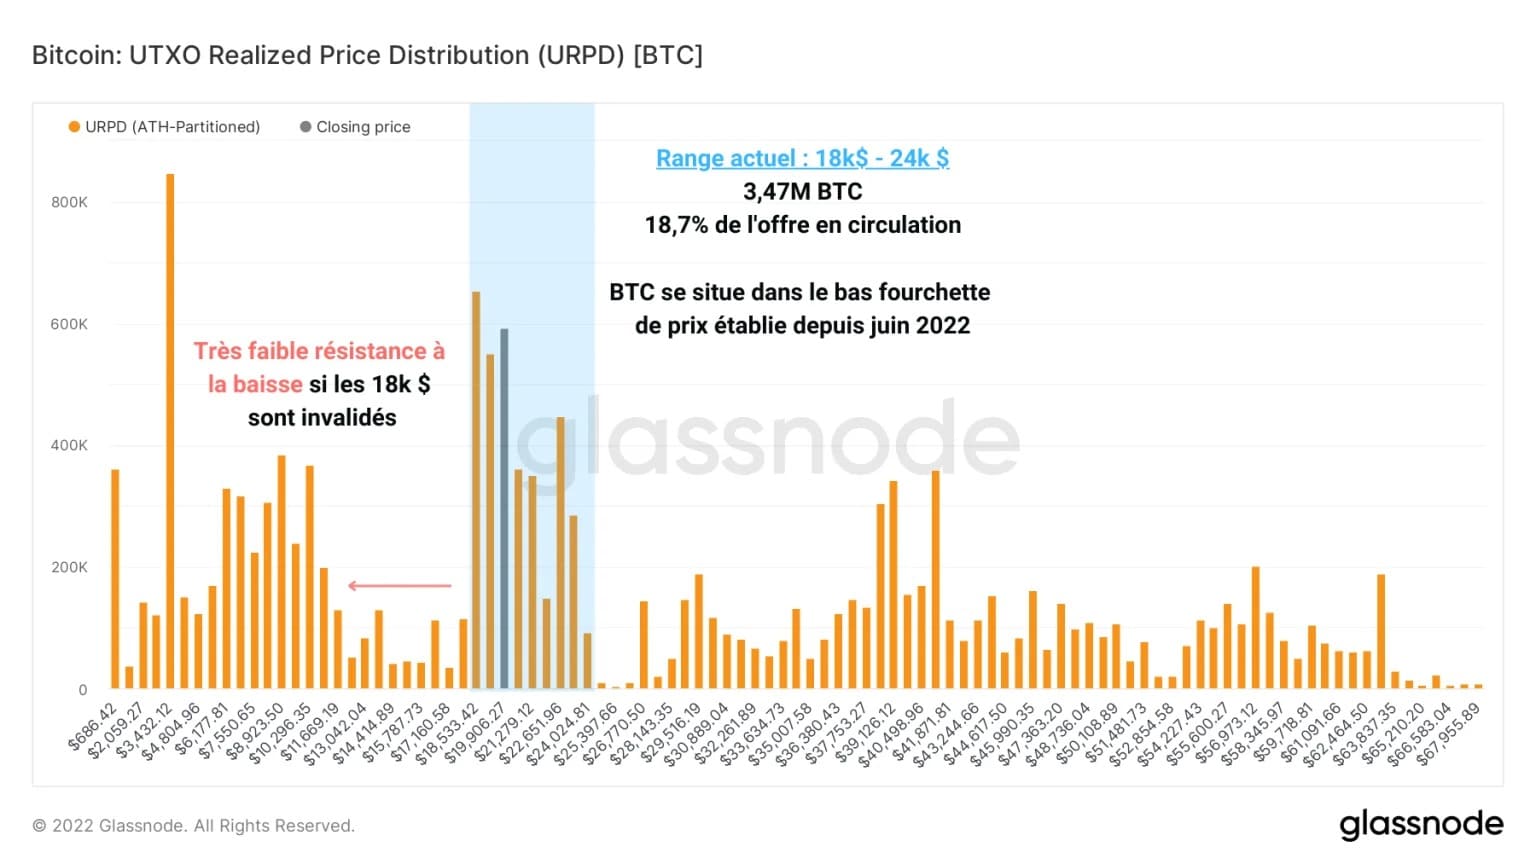 Abbildung 2: Verteilung der realisierten Preise von UTXO